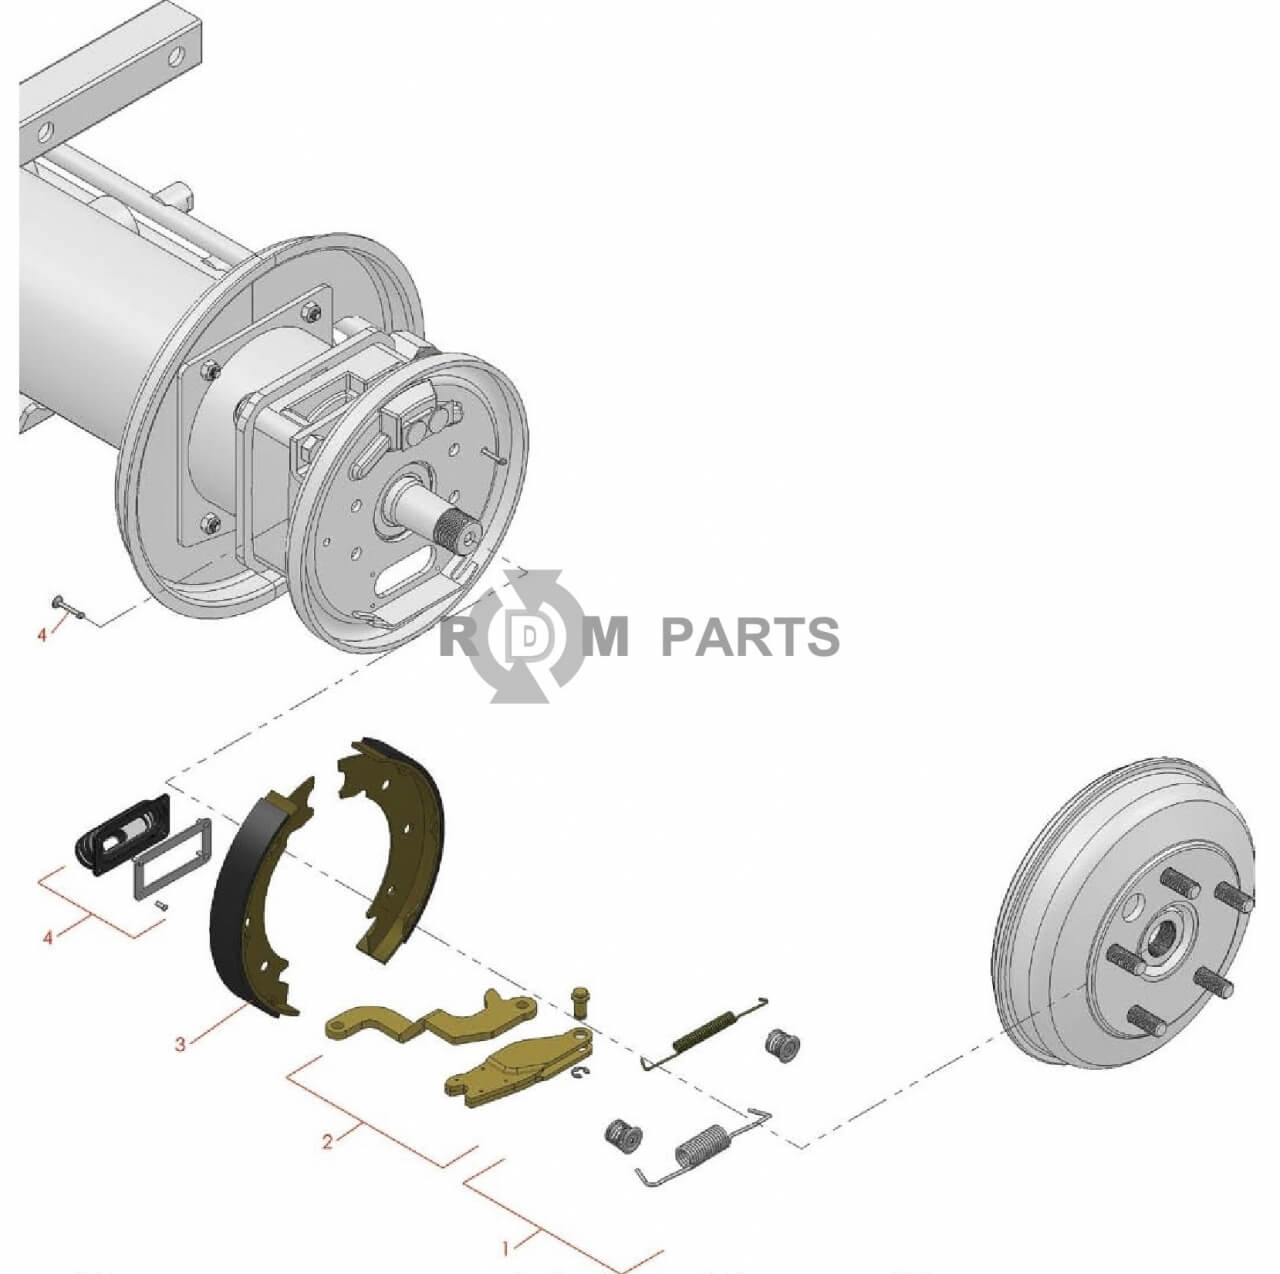 Replacement parts for RM 5210D 5410D 5510D 5610D Brake